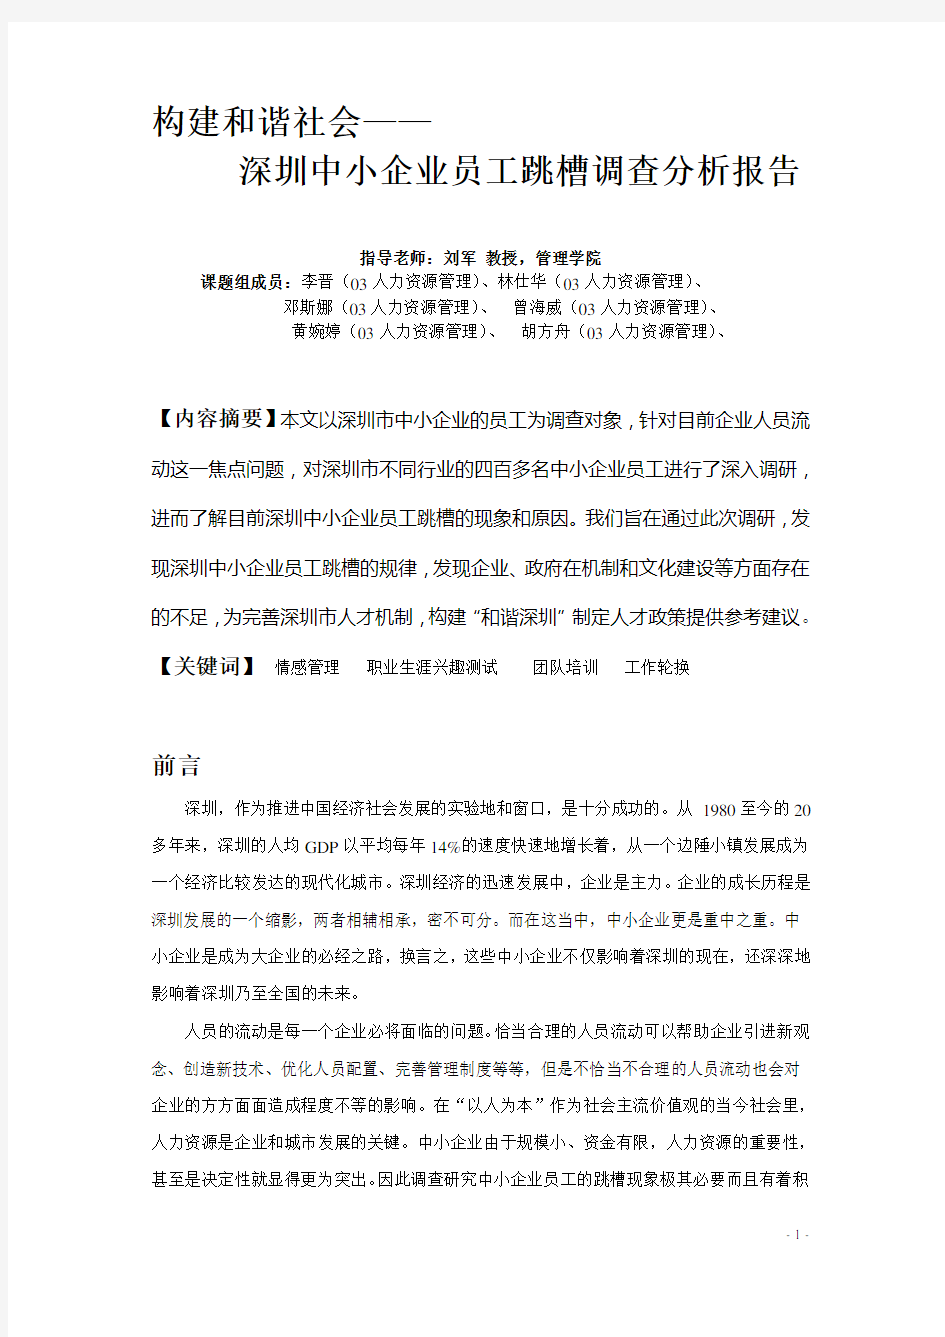 018 深圳中小企业员工跳槽调查分析报告(doc 23)